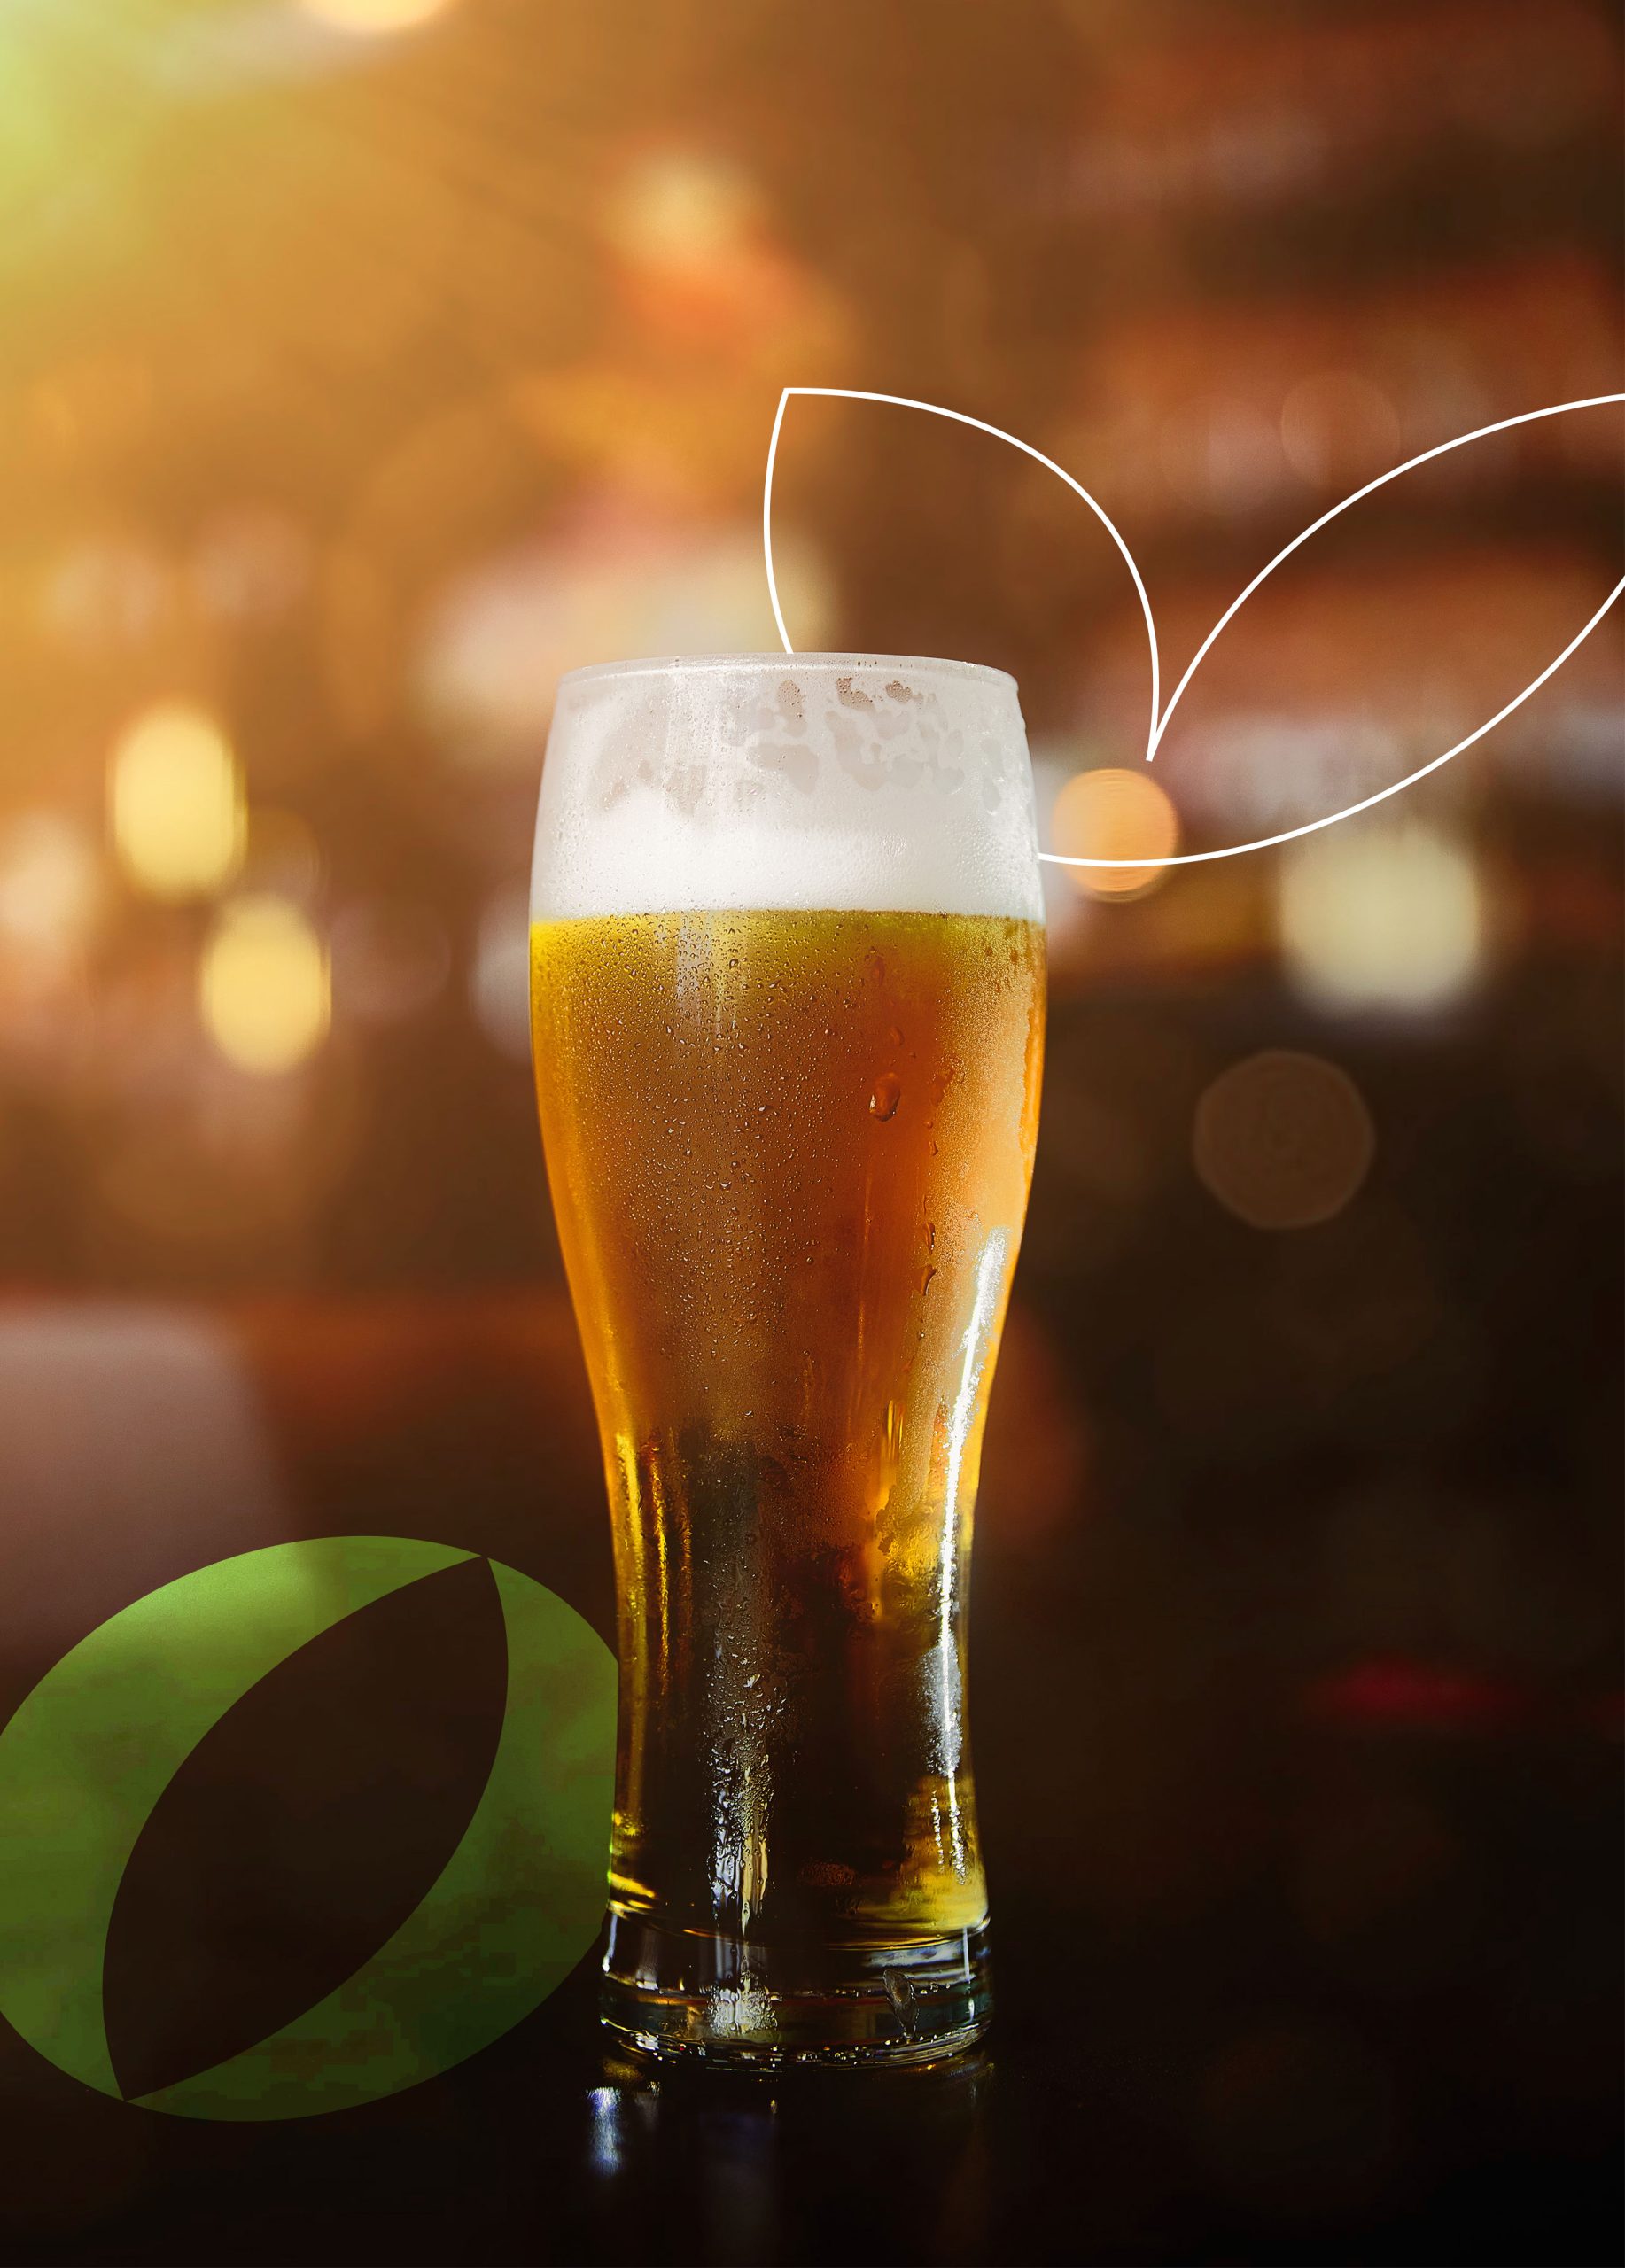 GP comemora o Dia Internacional da Cerveja com campanha “Muito Mais que Cerveja”